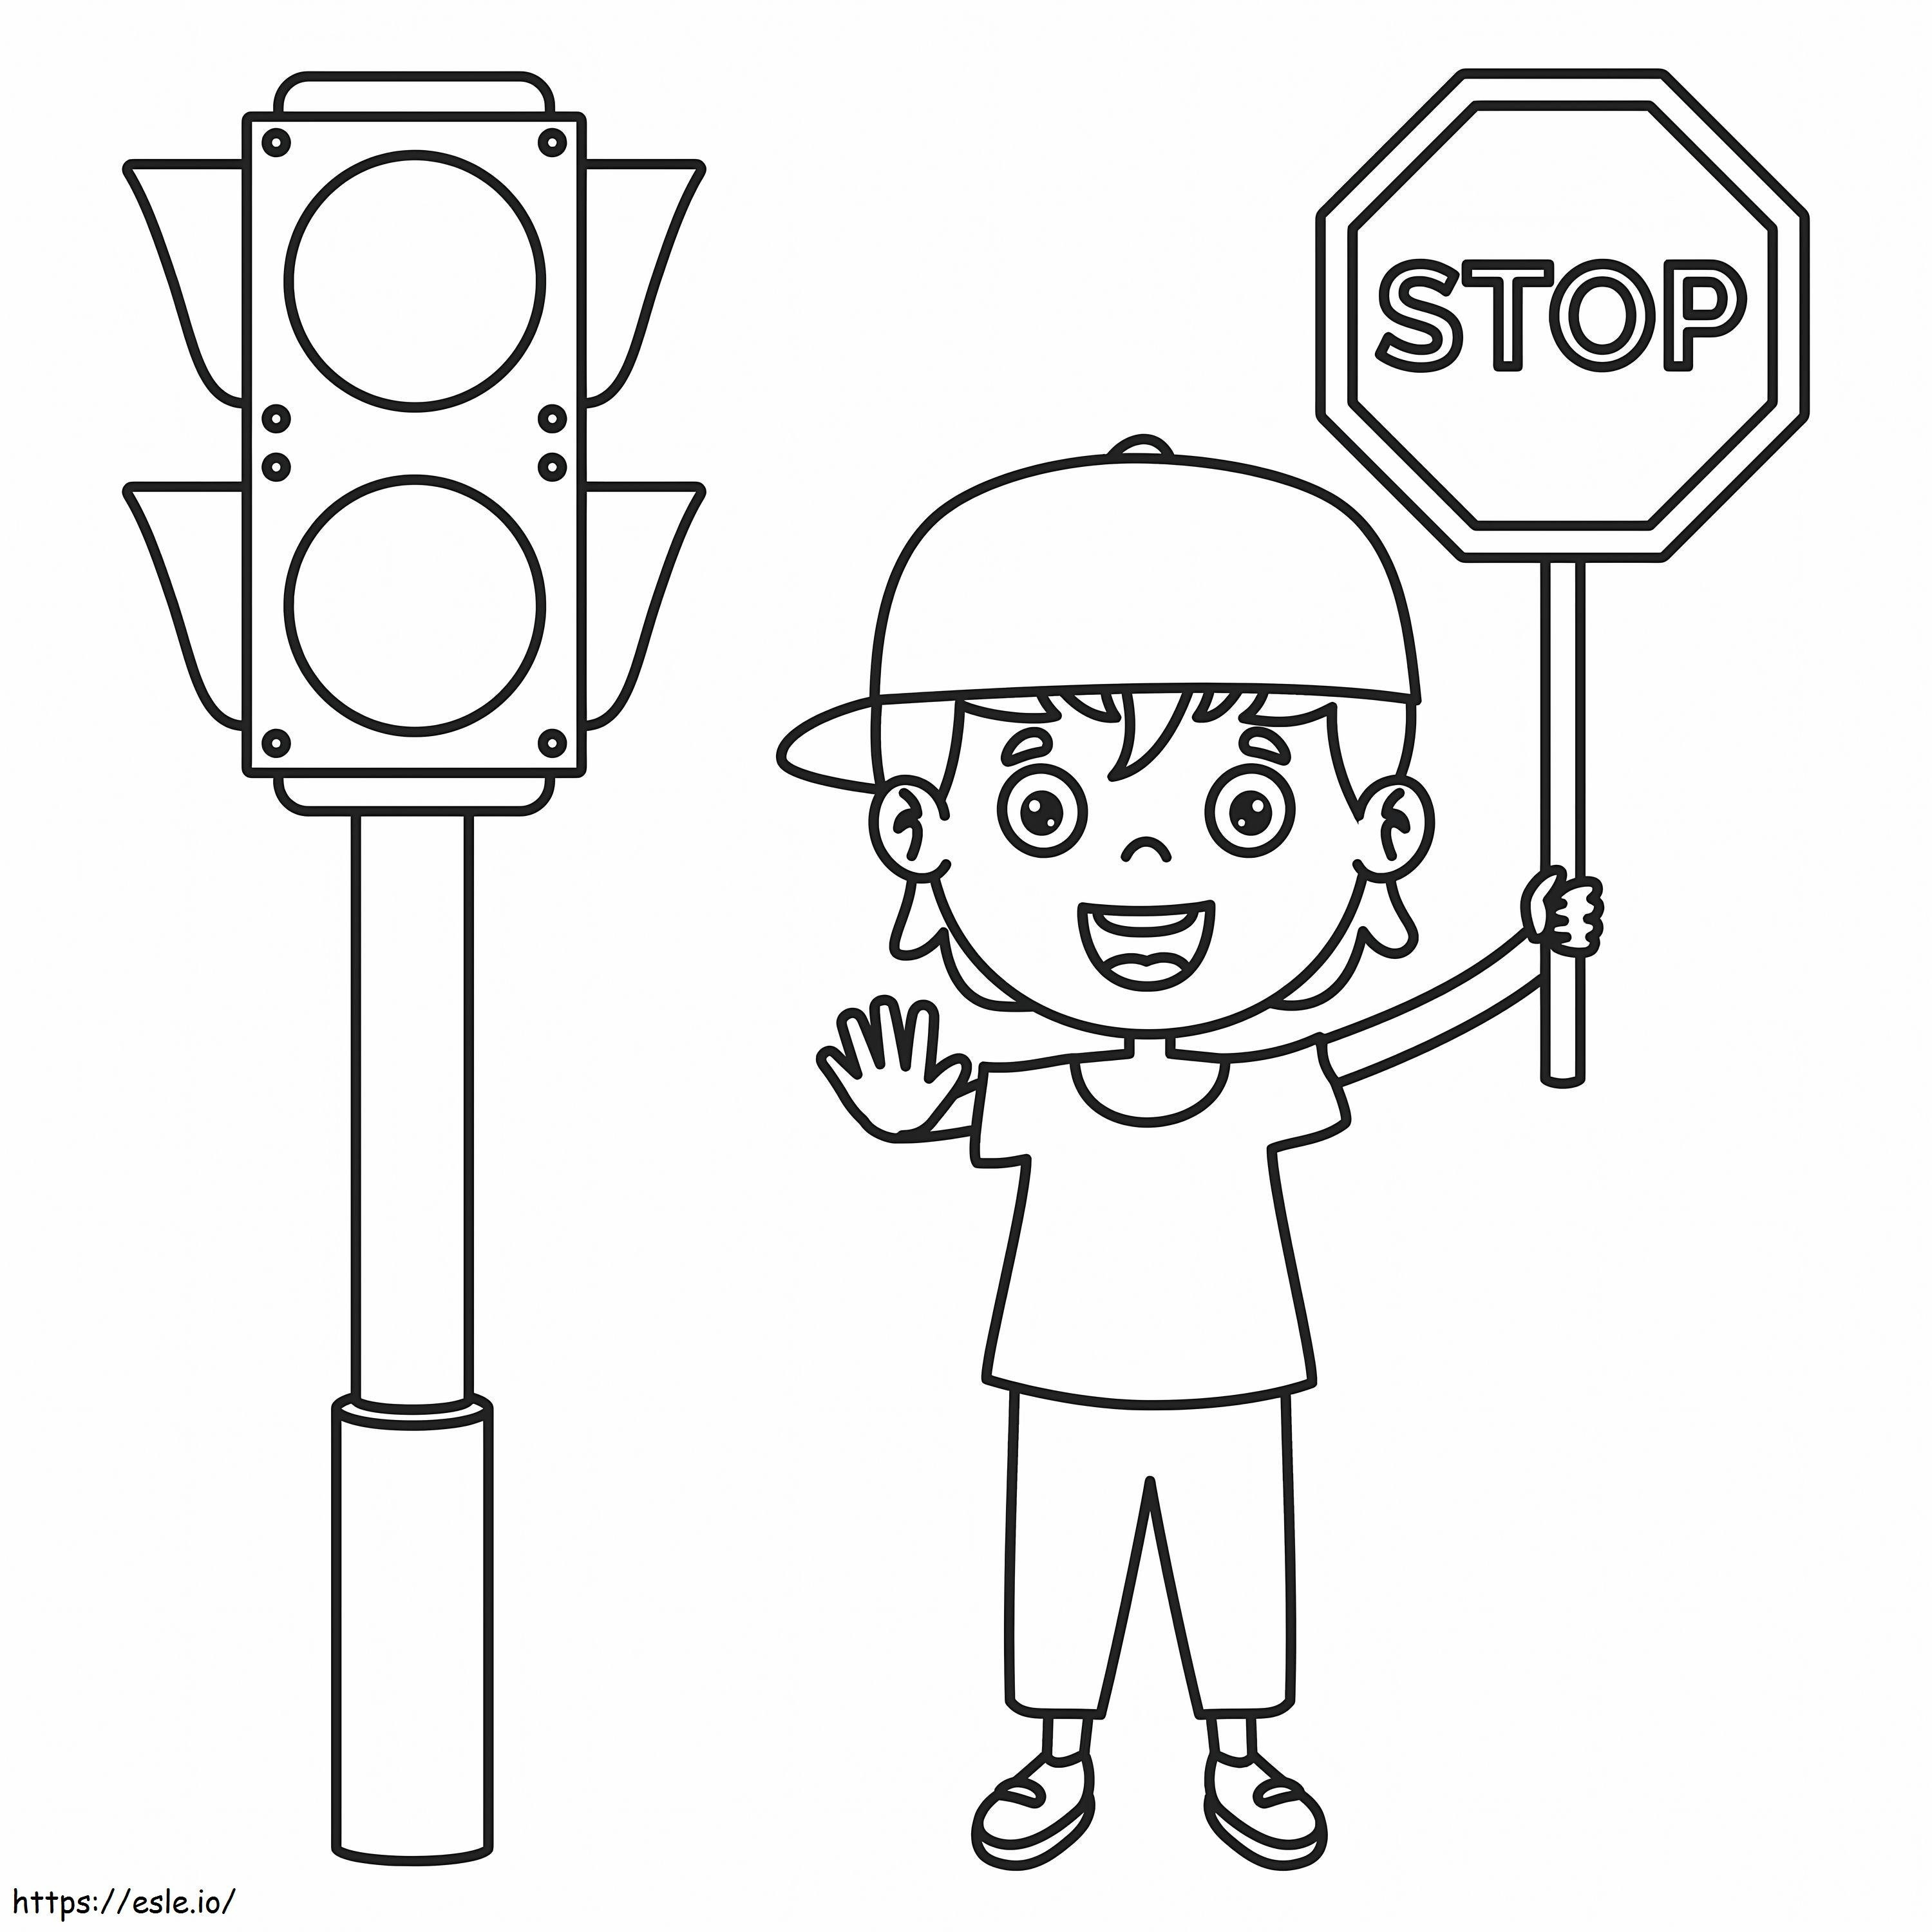 Leuk kind met stopbord en verkeerslicht kleurplaat kleurplaat